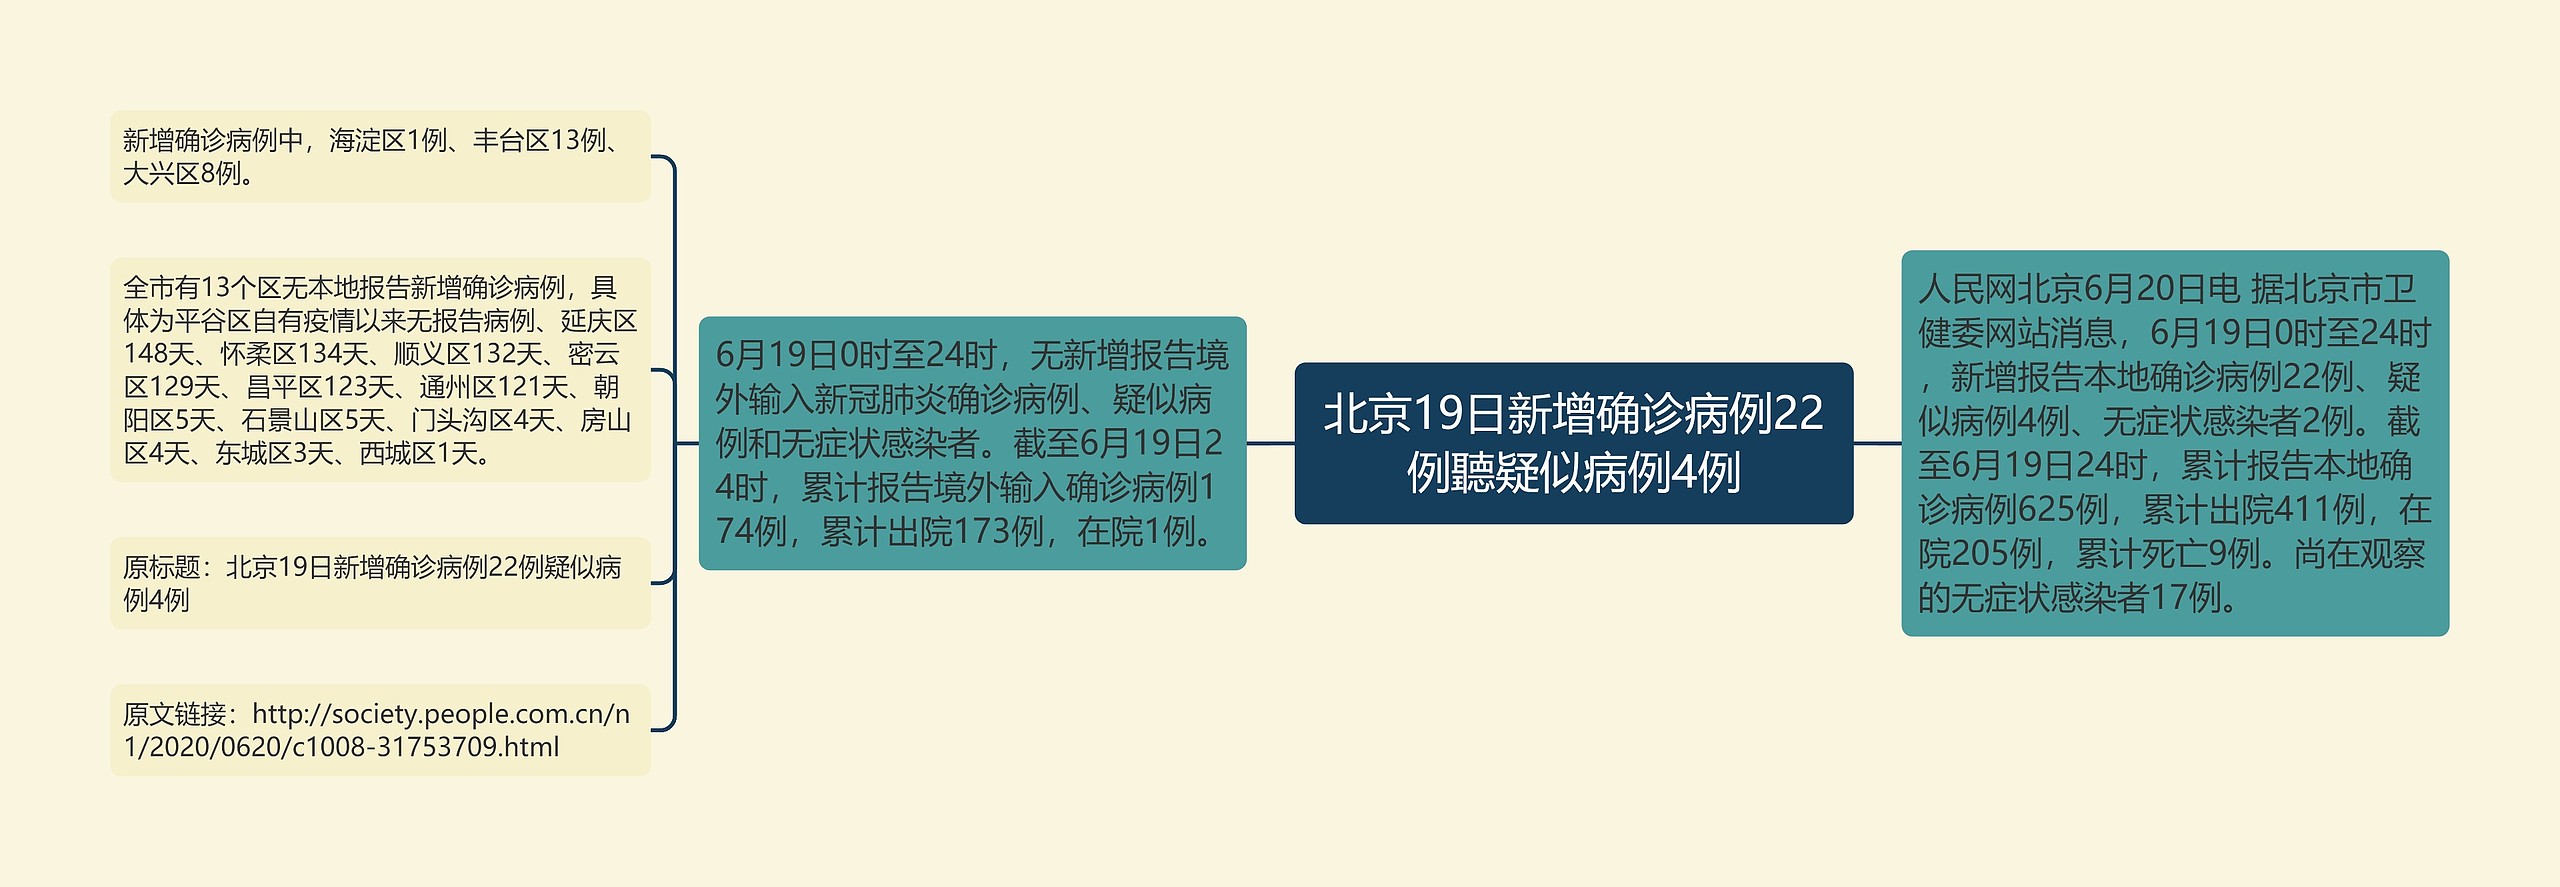 北京19日新增确诊病例22例聽疑似病例4例思维导图